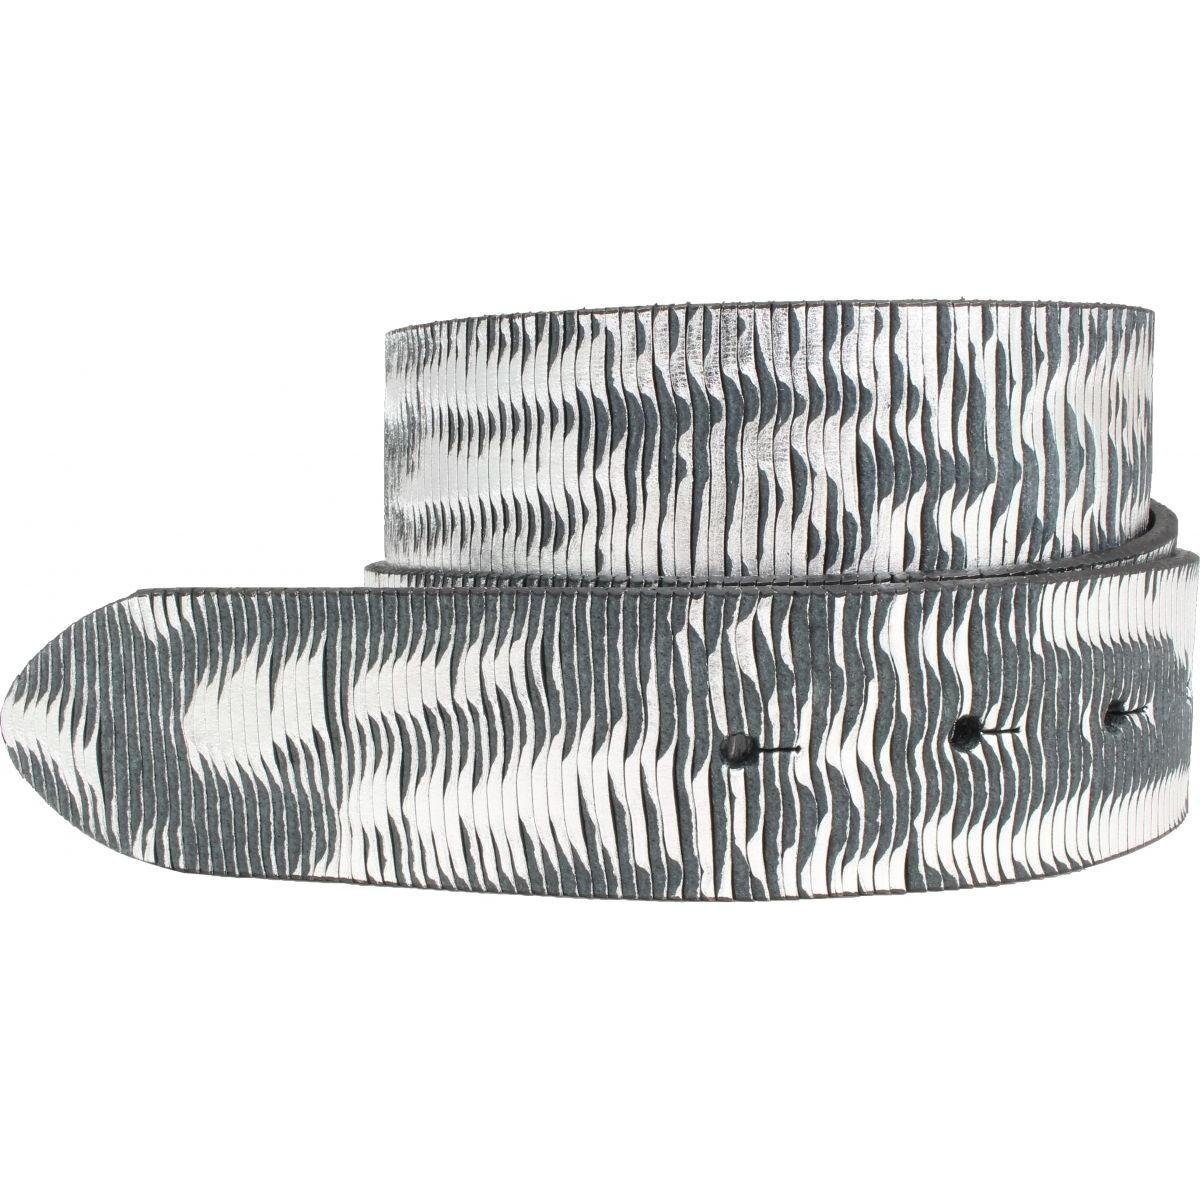 BELTINGER Ledergürtel Wechselgürtel aus Vollrindleder Metall-Optik ohne Schnalle 4 cm - Druc Schwarz Metallik